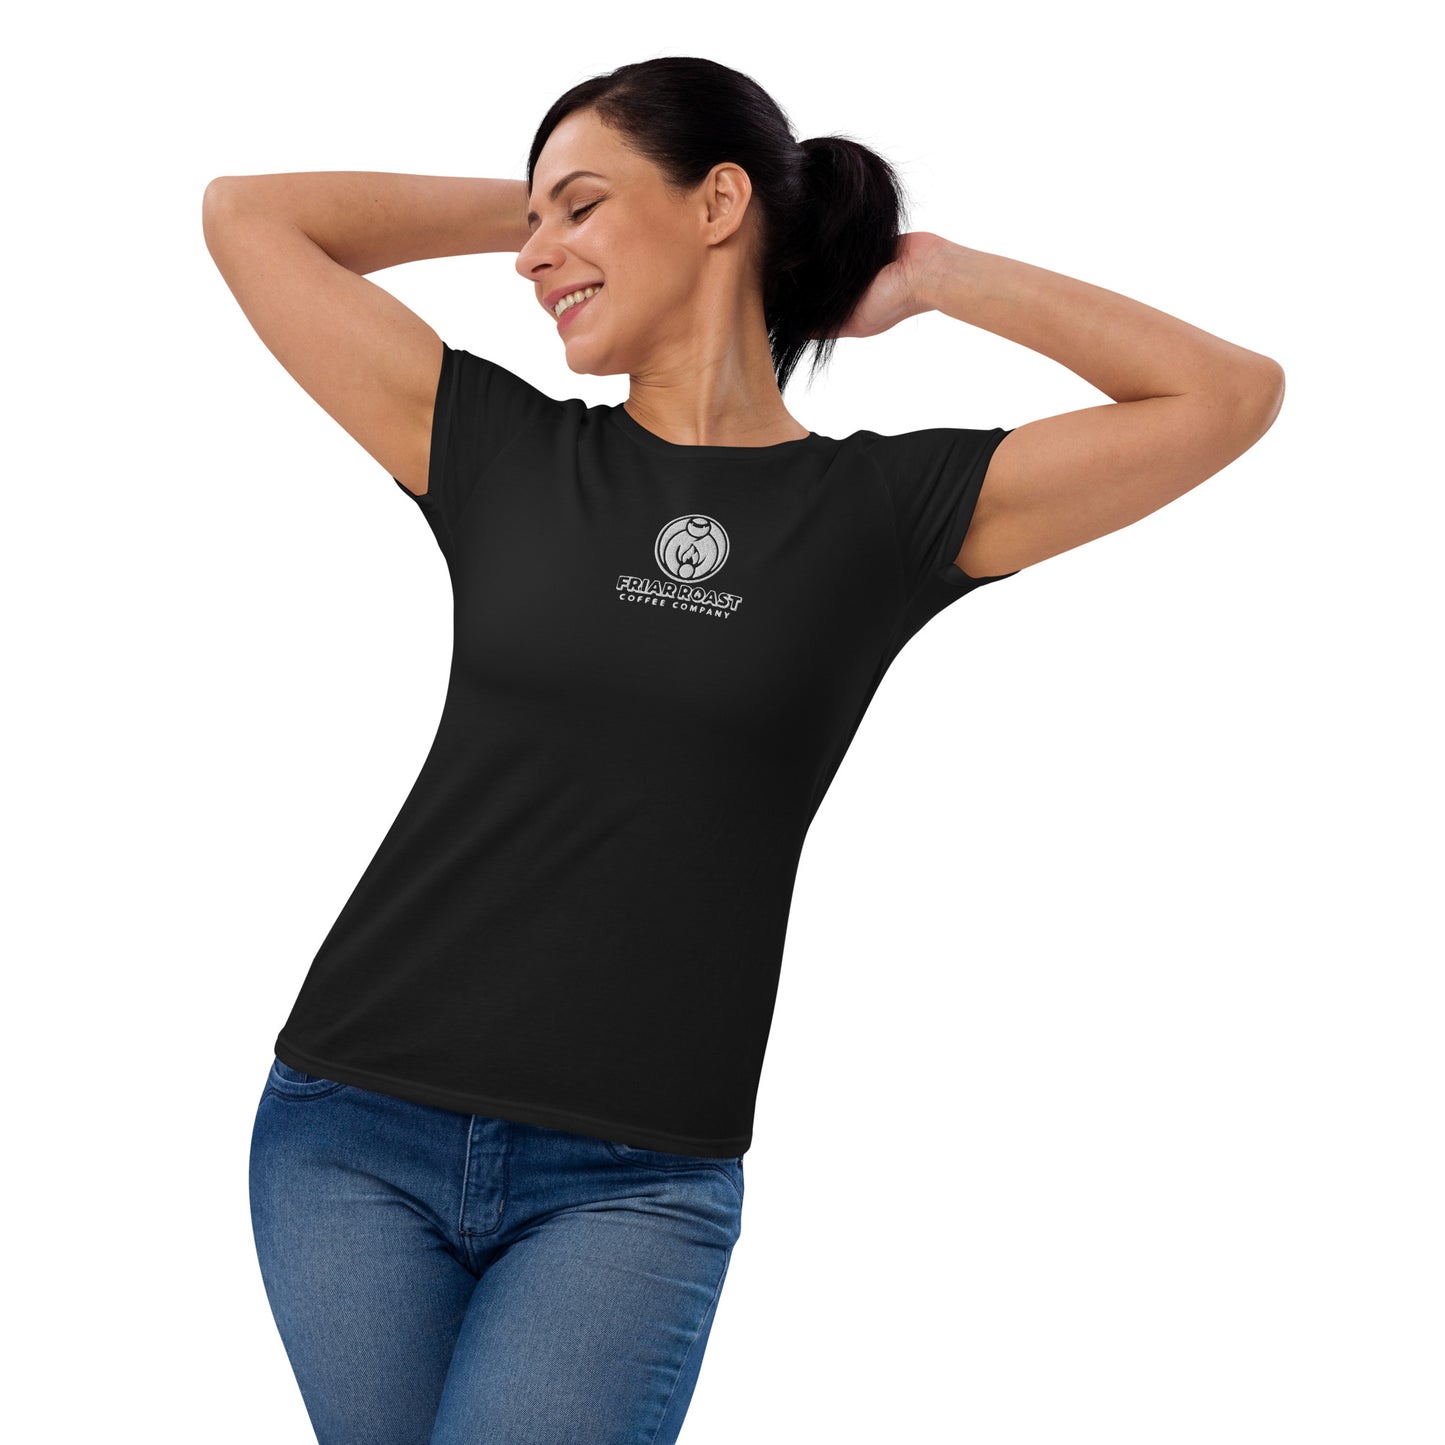 Friar Roast Women's short sleeve t-shirt